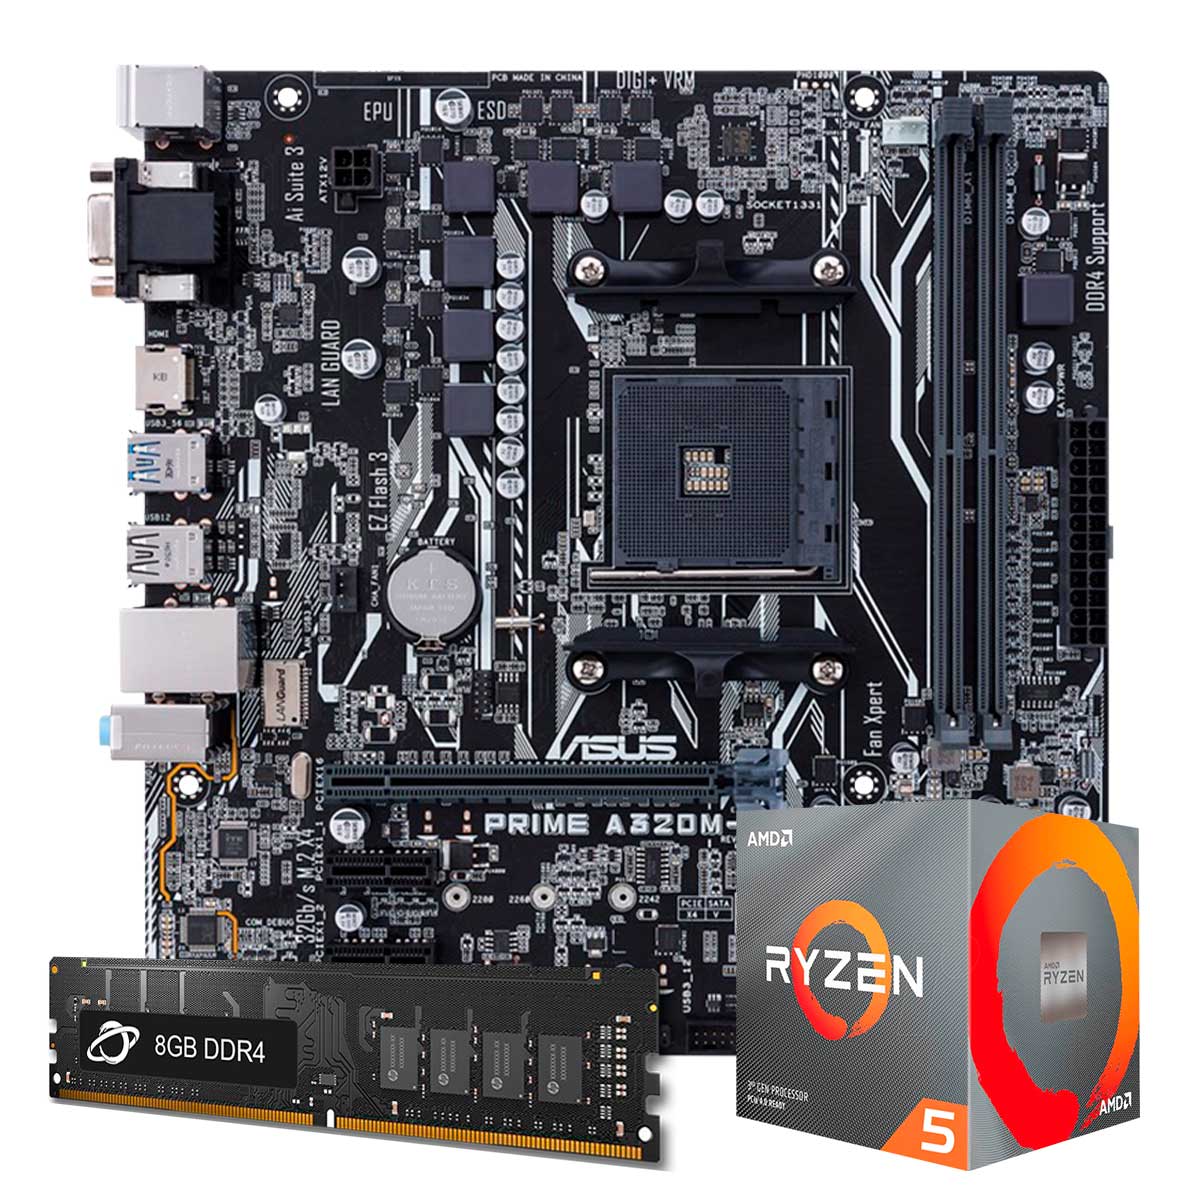 Kit Upgrade Processador AMD Ryzen™ 5 1600 AF + Placa Mãe Asus Prime A320M-K/BR + Memória 8GB DDR4